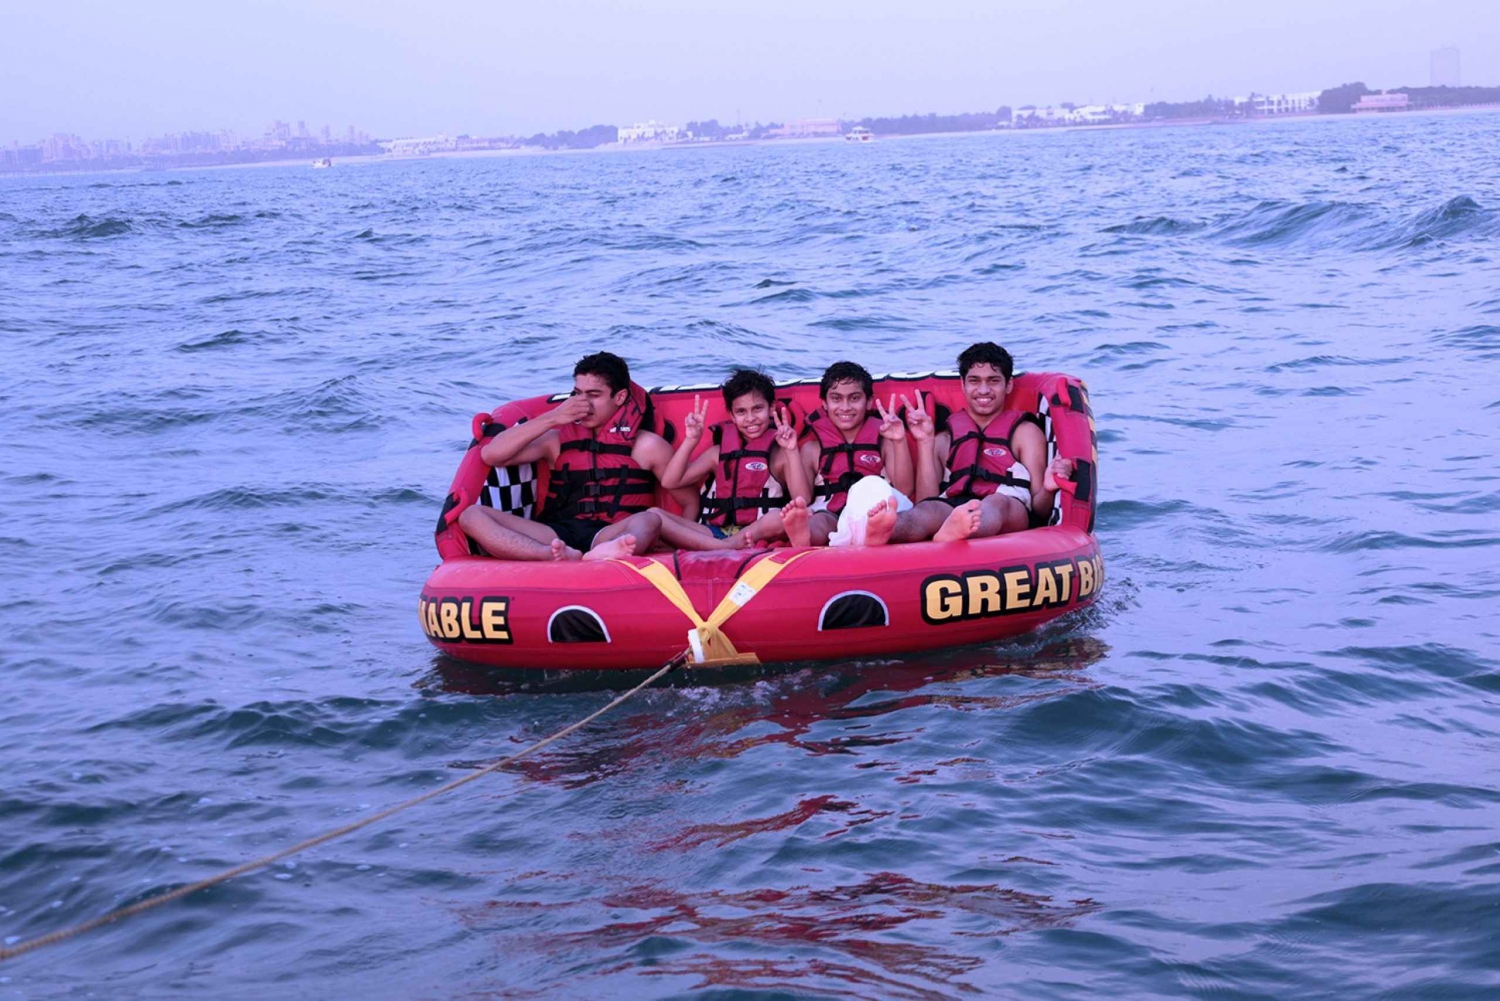 Dubai: Exclusivo paseo en barco de 15 minutos para grupos